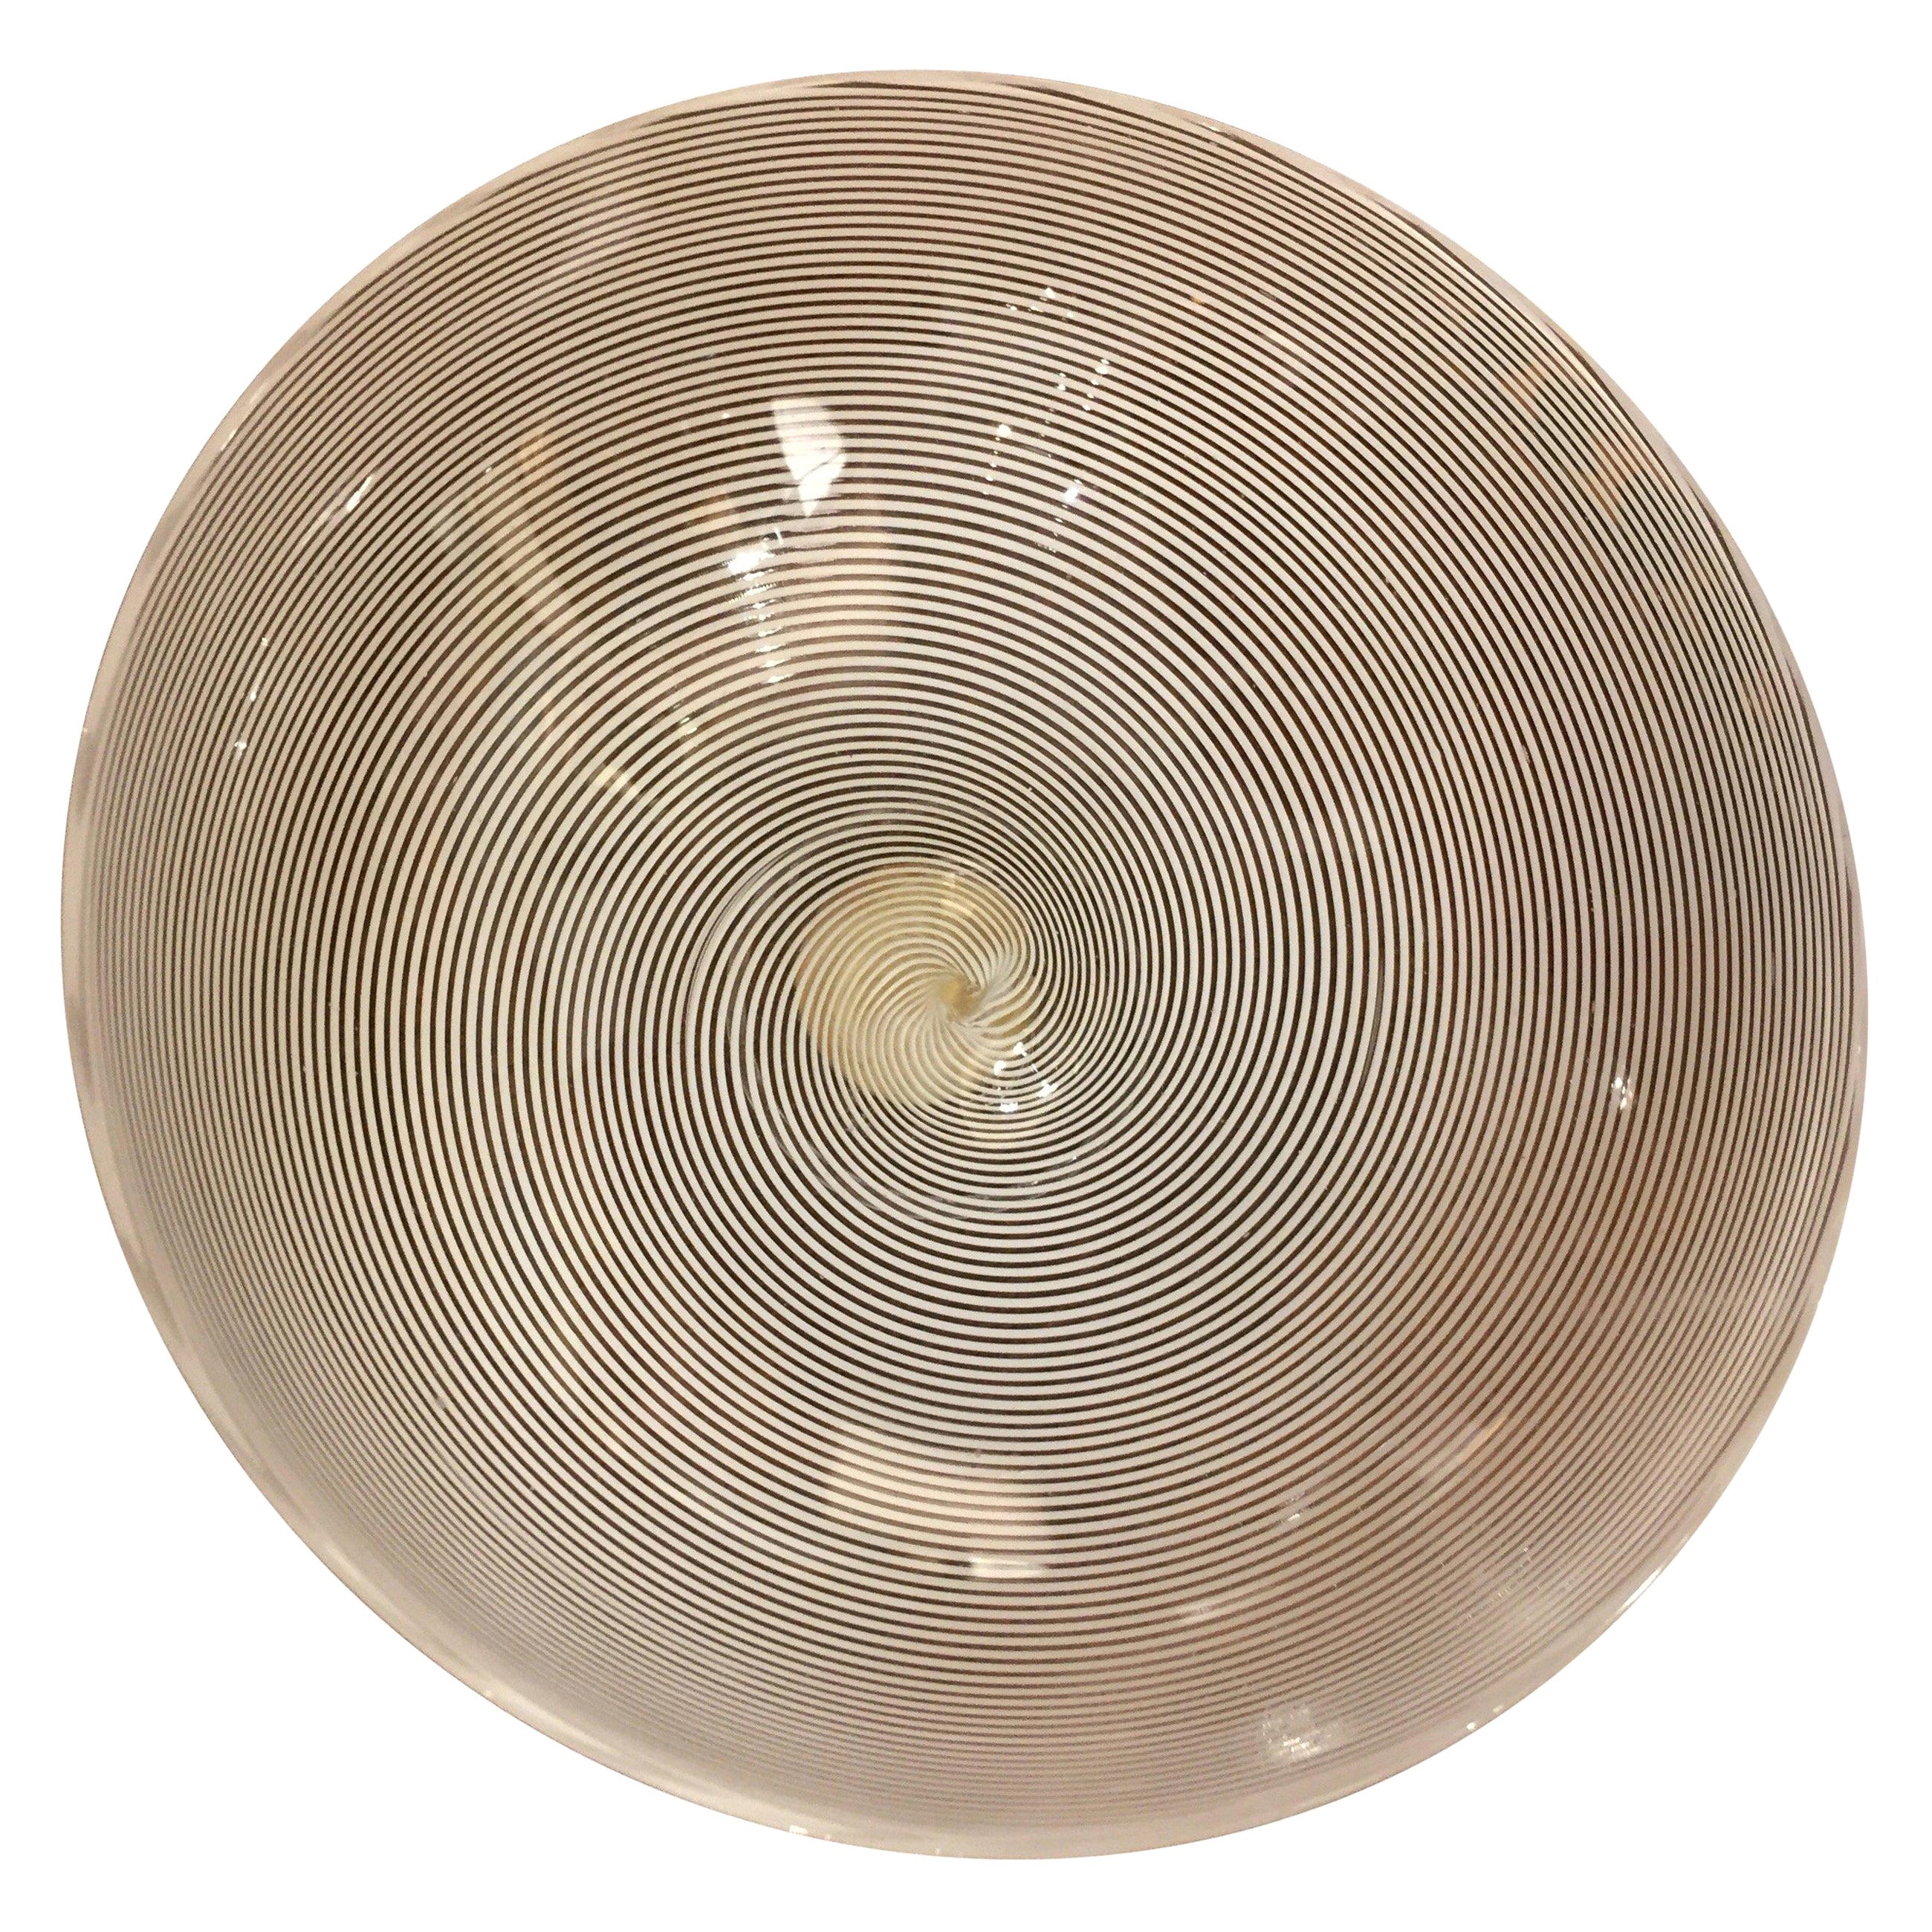 Barovier Toso Murano Art Glass Vide Poche White Spiral Filigree Design, 1950 For Sale